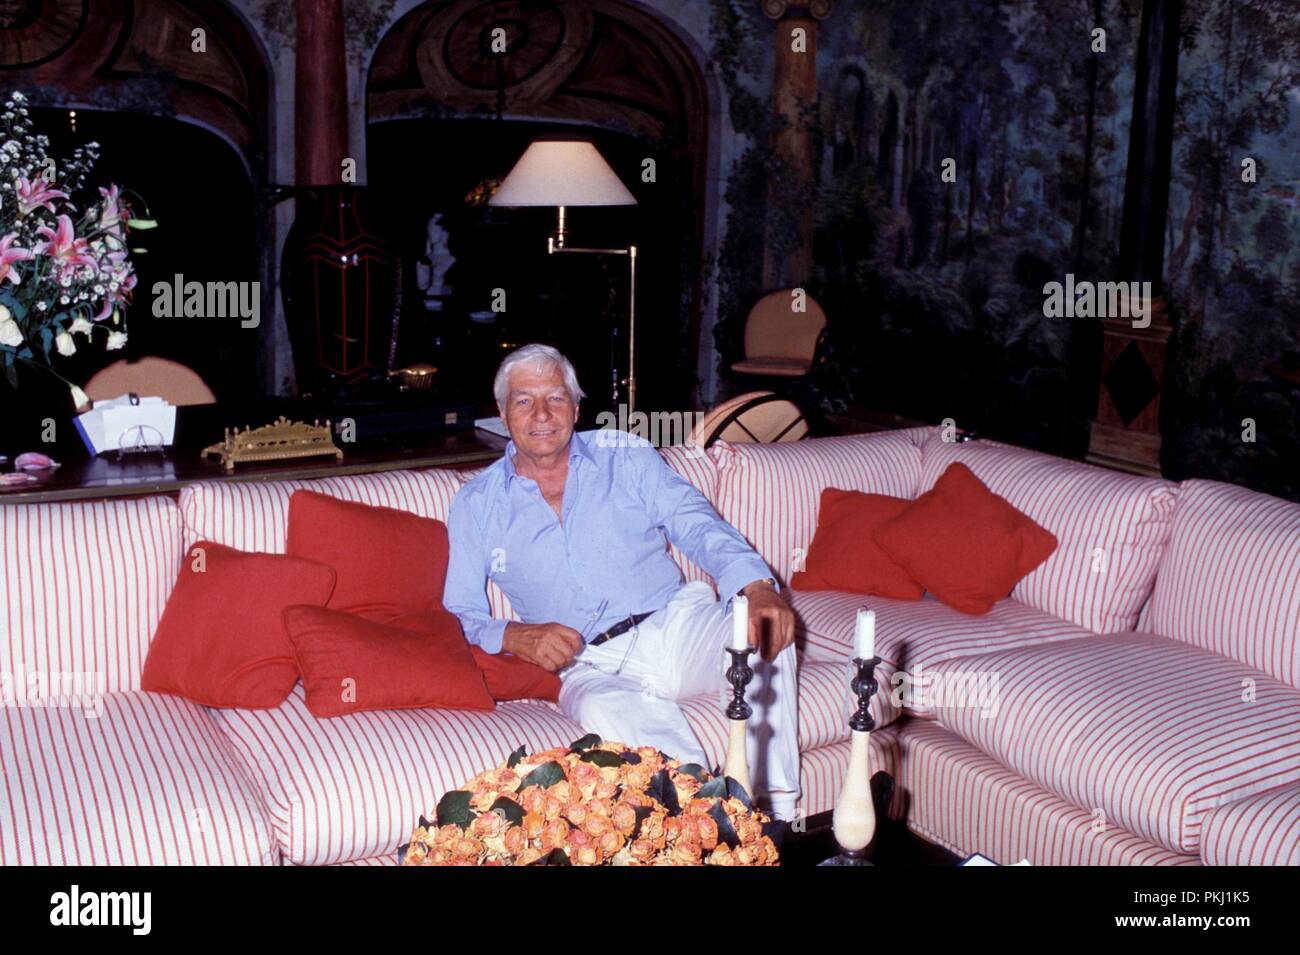 Gunter Sachs entspannt und posiert auf einem Sofa, 2000er Jahre. Gunter Sachs relaxes and poses on a sofa, 2000s. Stock Photo